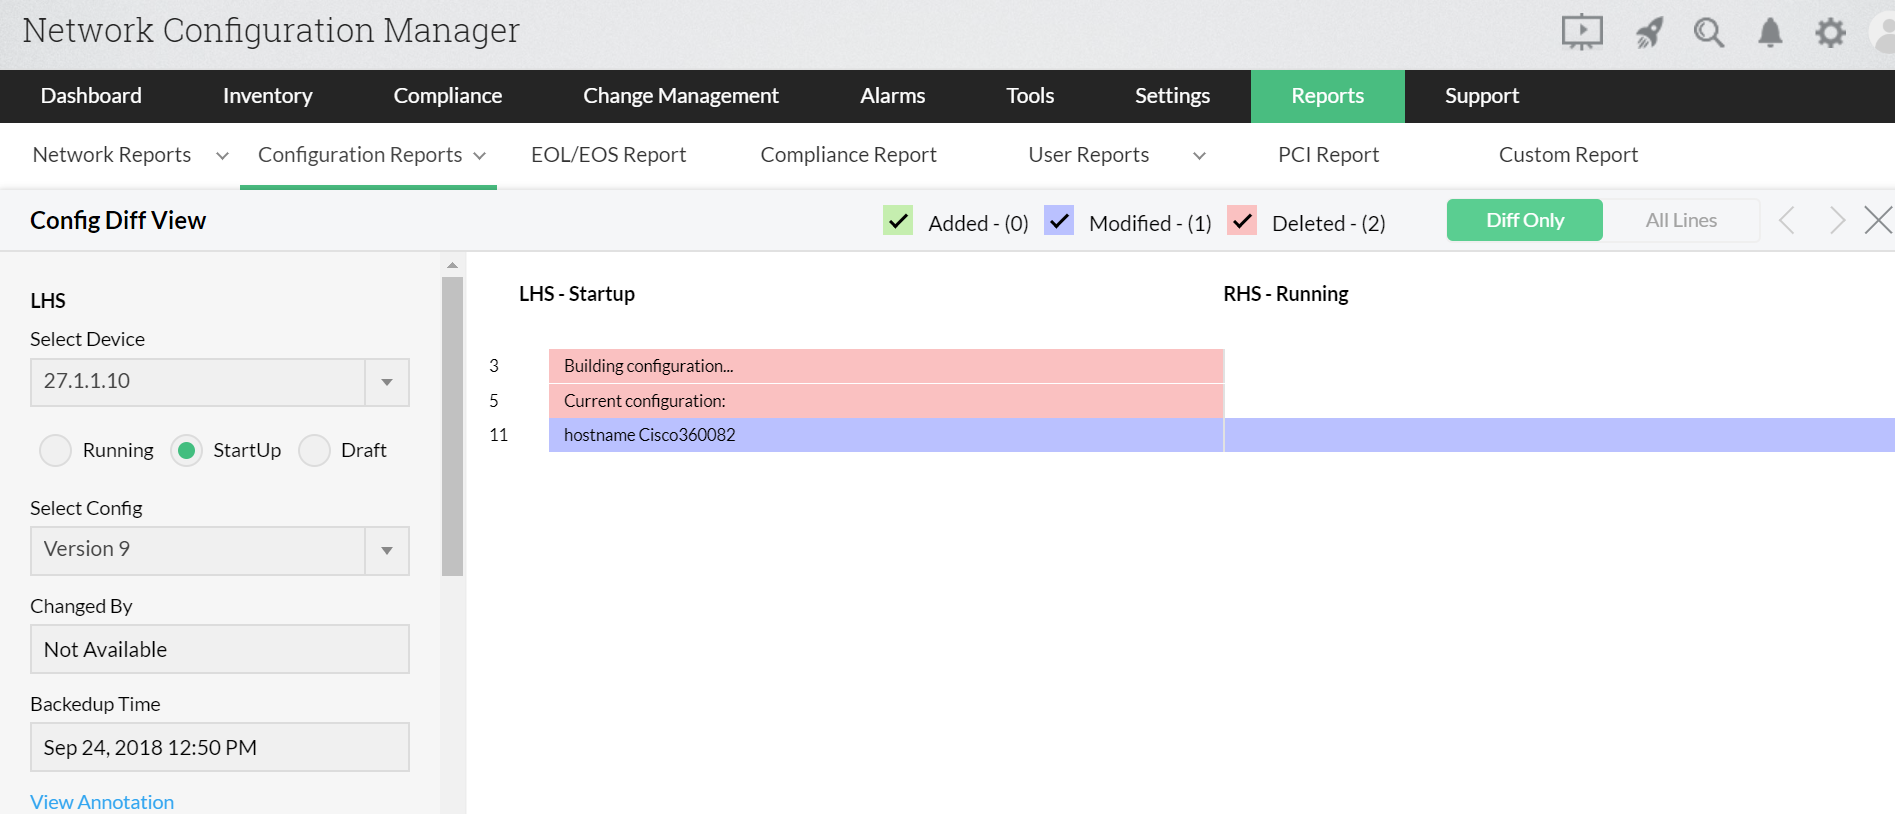 Dashboard de informes de conflictos de inicio-ejecución de Diff View de Network Configuration Manager